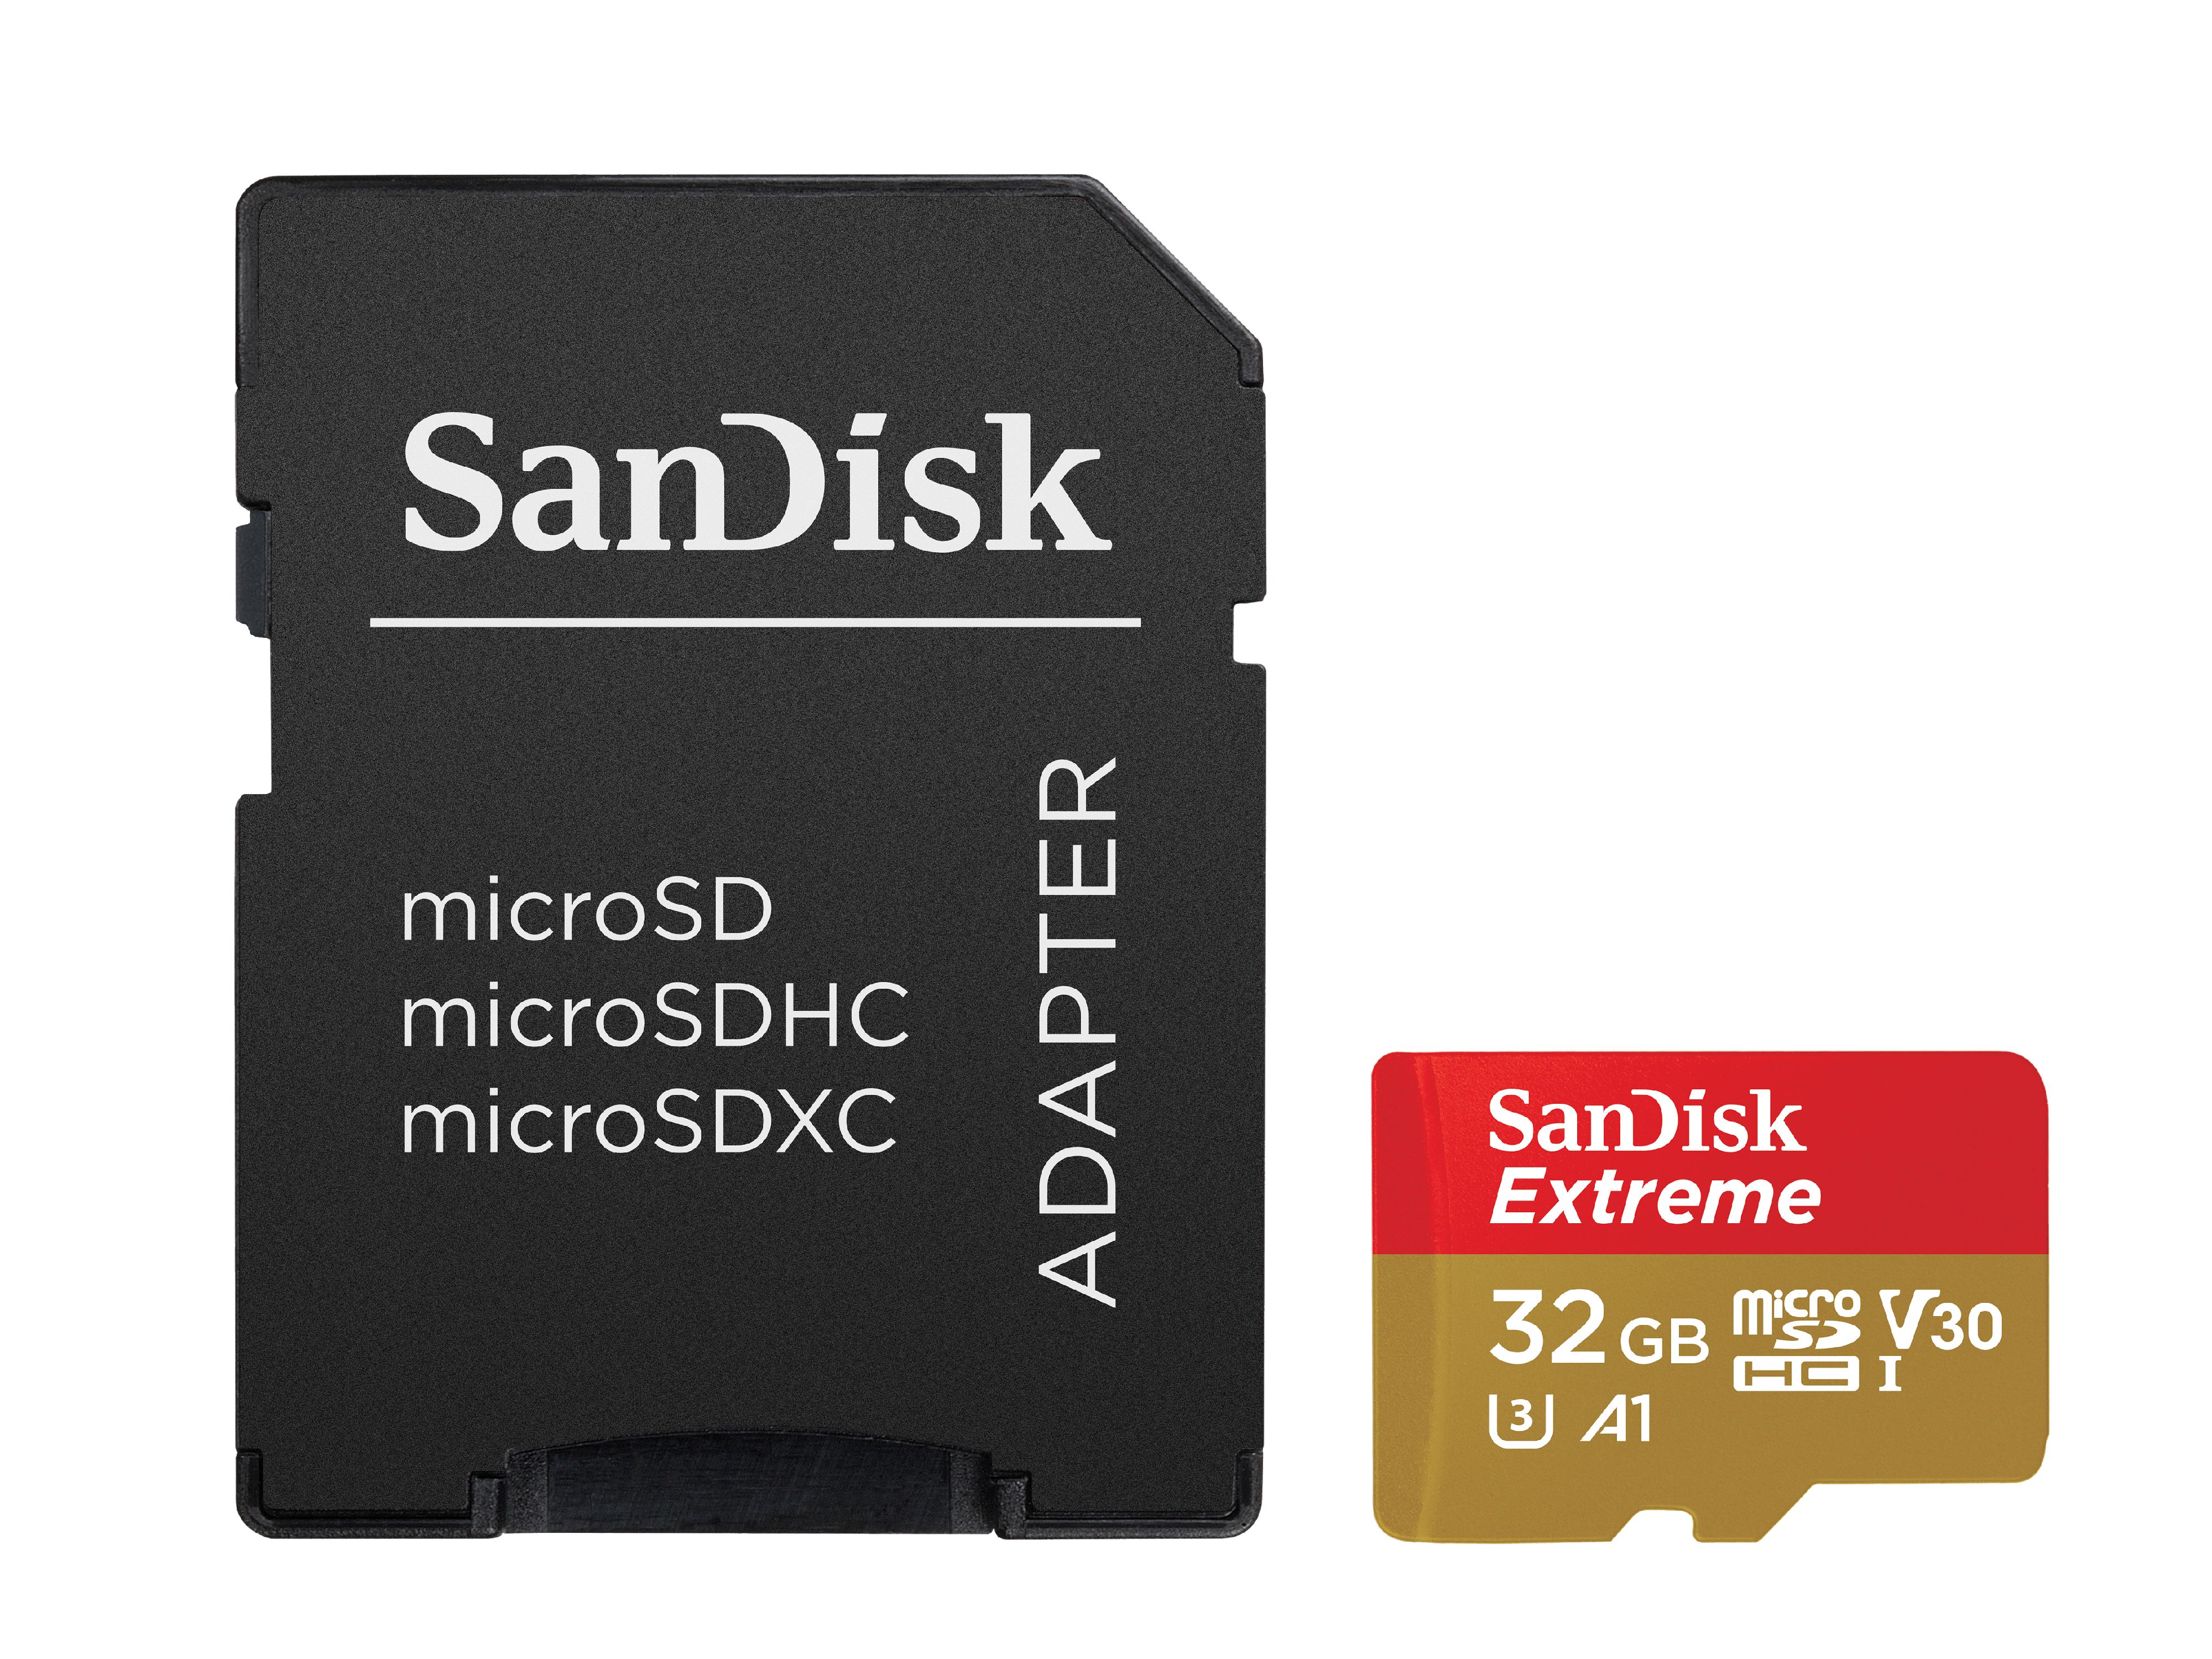 SanDisk-6A9765